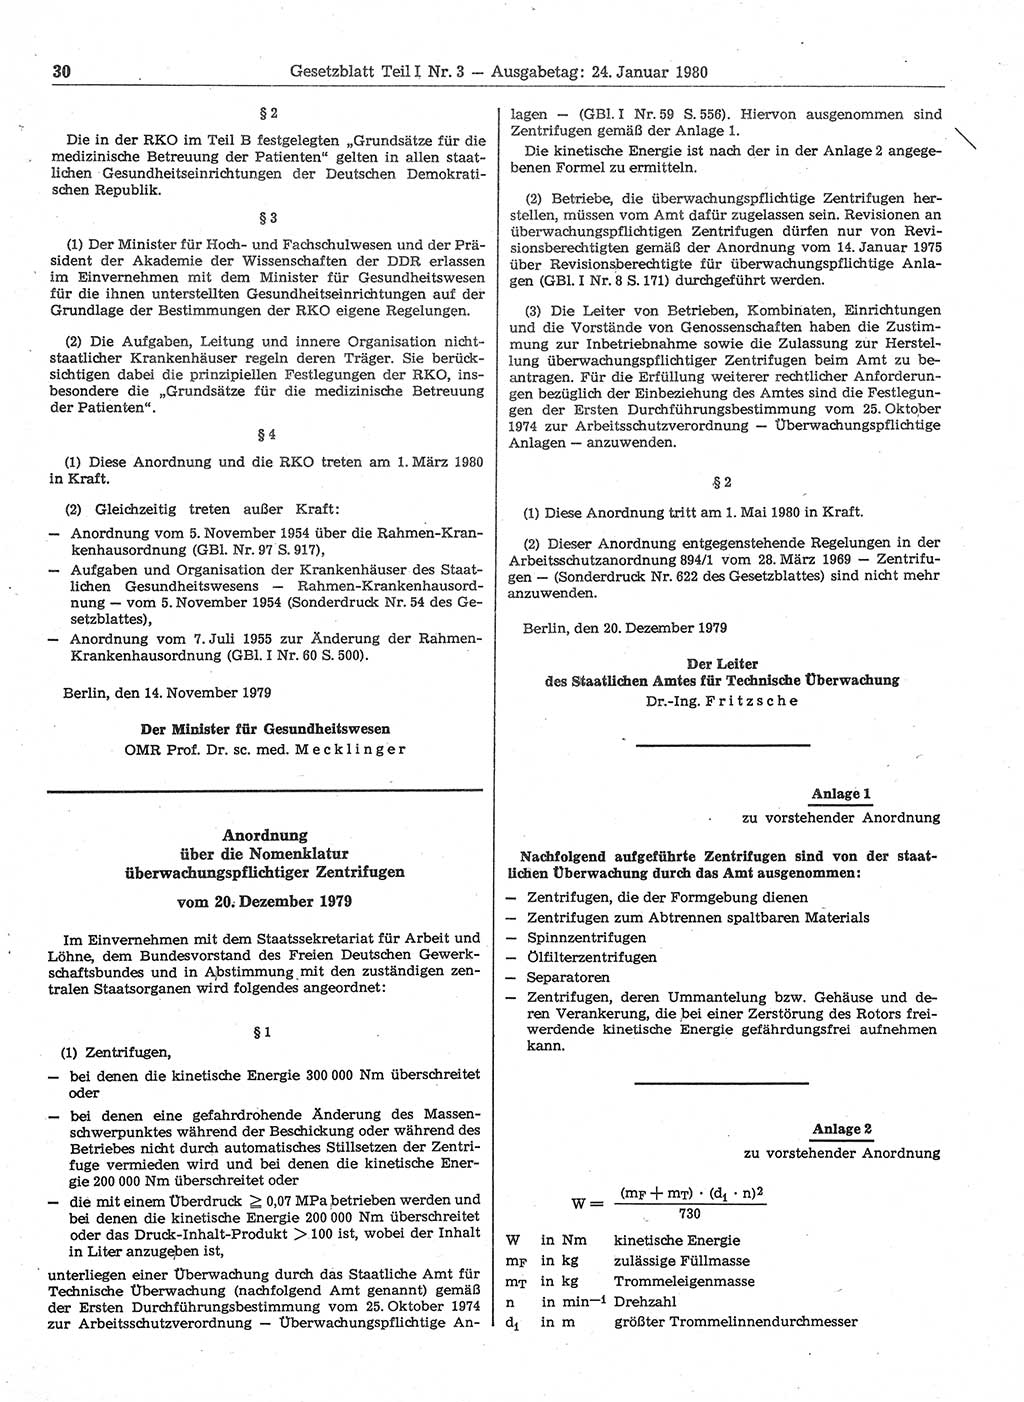 Gesetzblatt (GBl.) der Deutschen Demokratischen Republik (DDR) Teil Ⅰ 1980, Seite 30 (GBl. DDR Ⅰ 1980, S. 30)